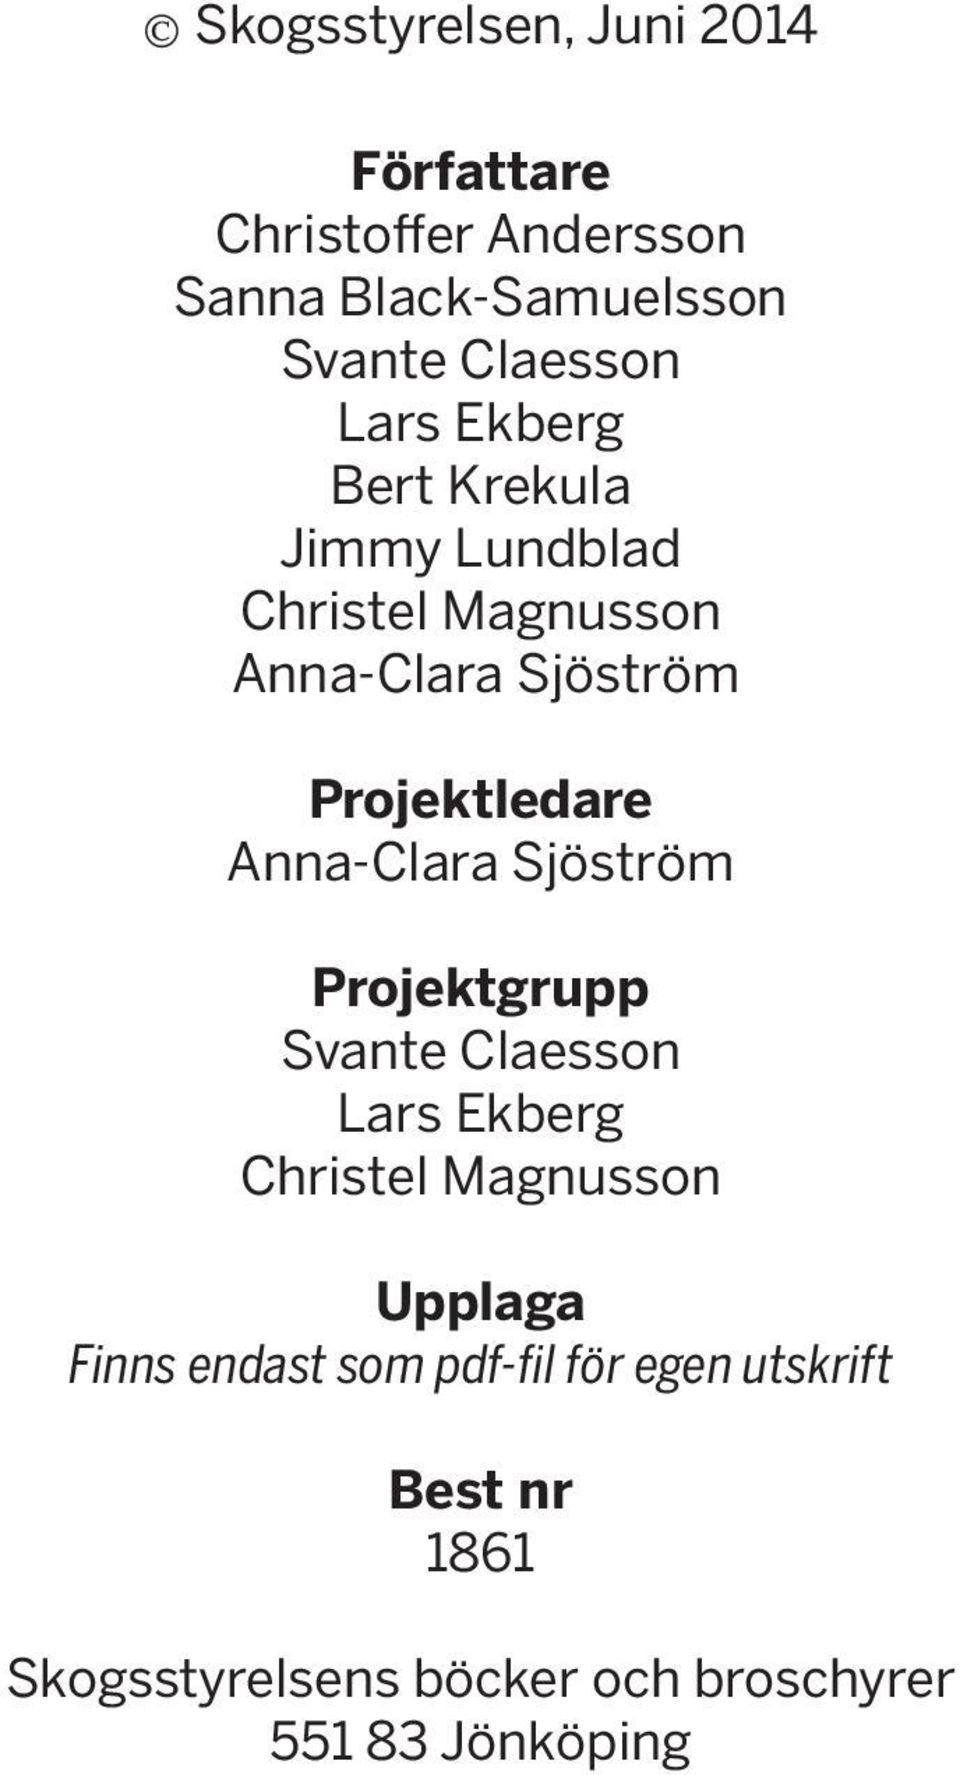 Anna-Clara Sjöström Projektgrupp Svante Claesson Lars Ekberg Christel Magnusson Upplaga Finns